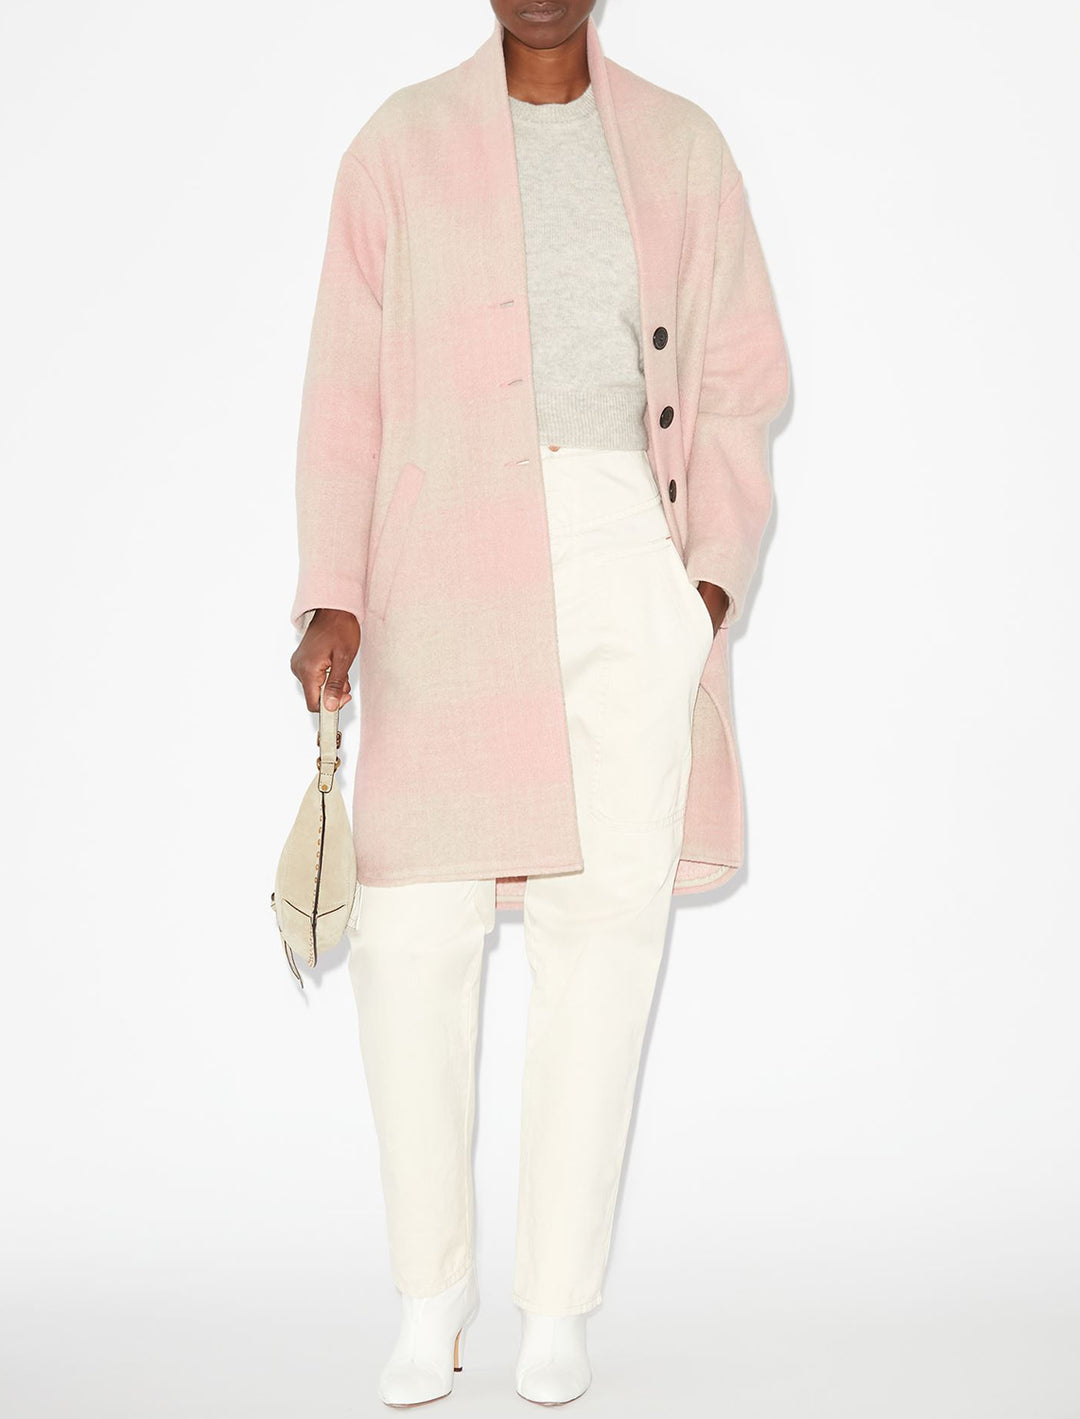 Model wearing Isabel Marant Etoile's Gabriel Coat in Light Pink.